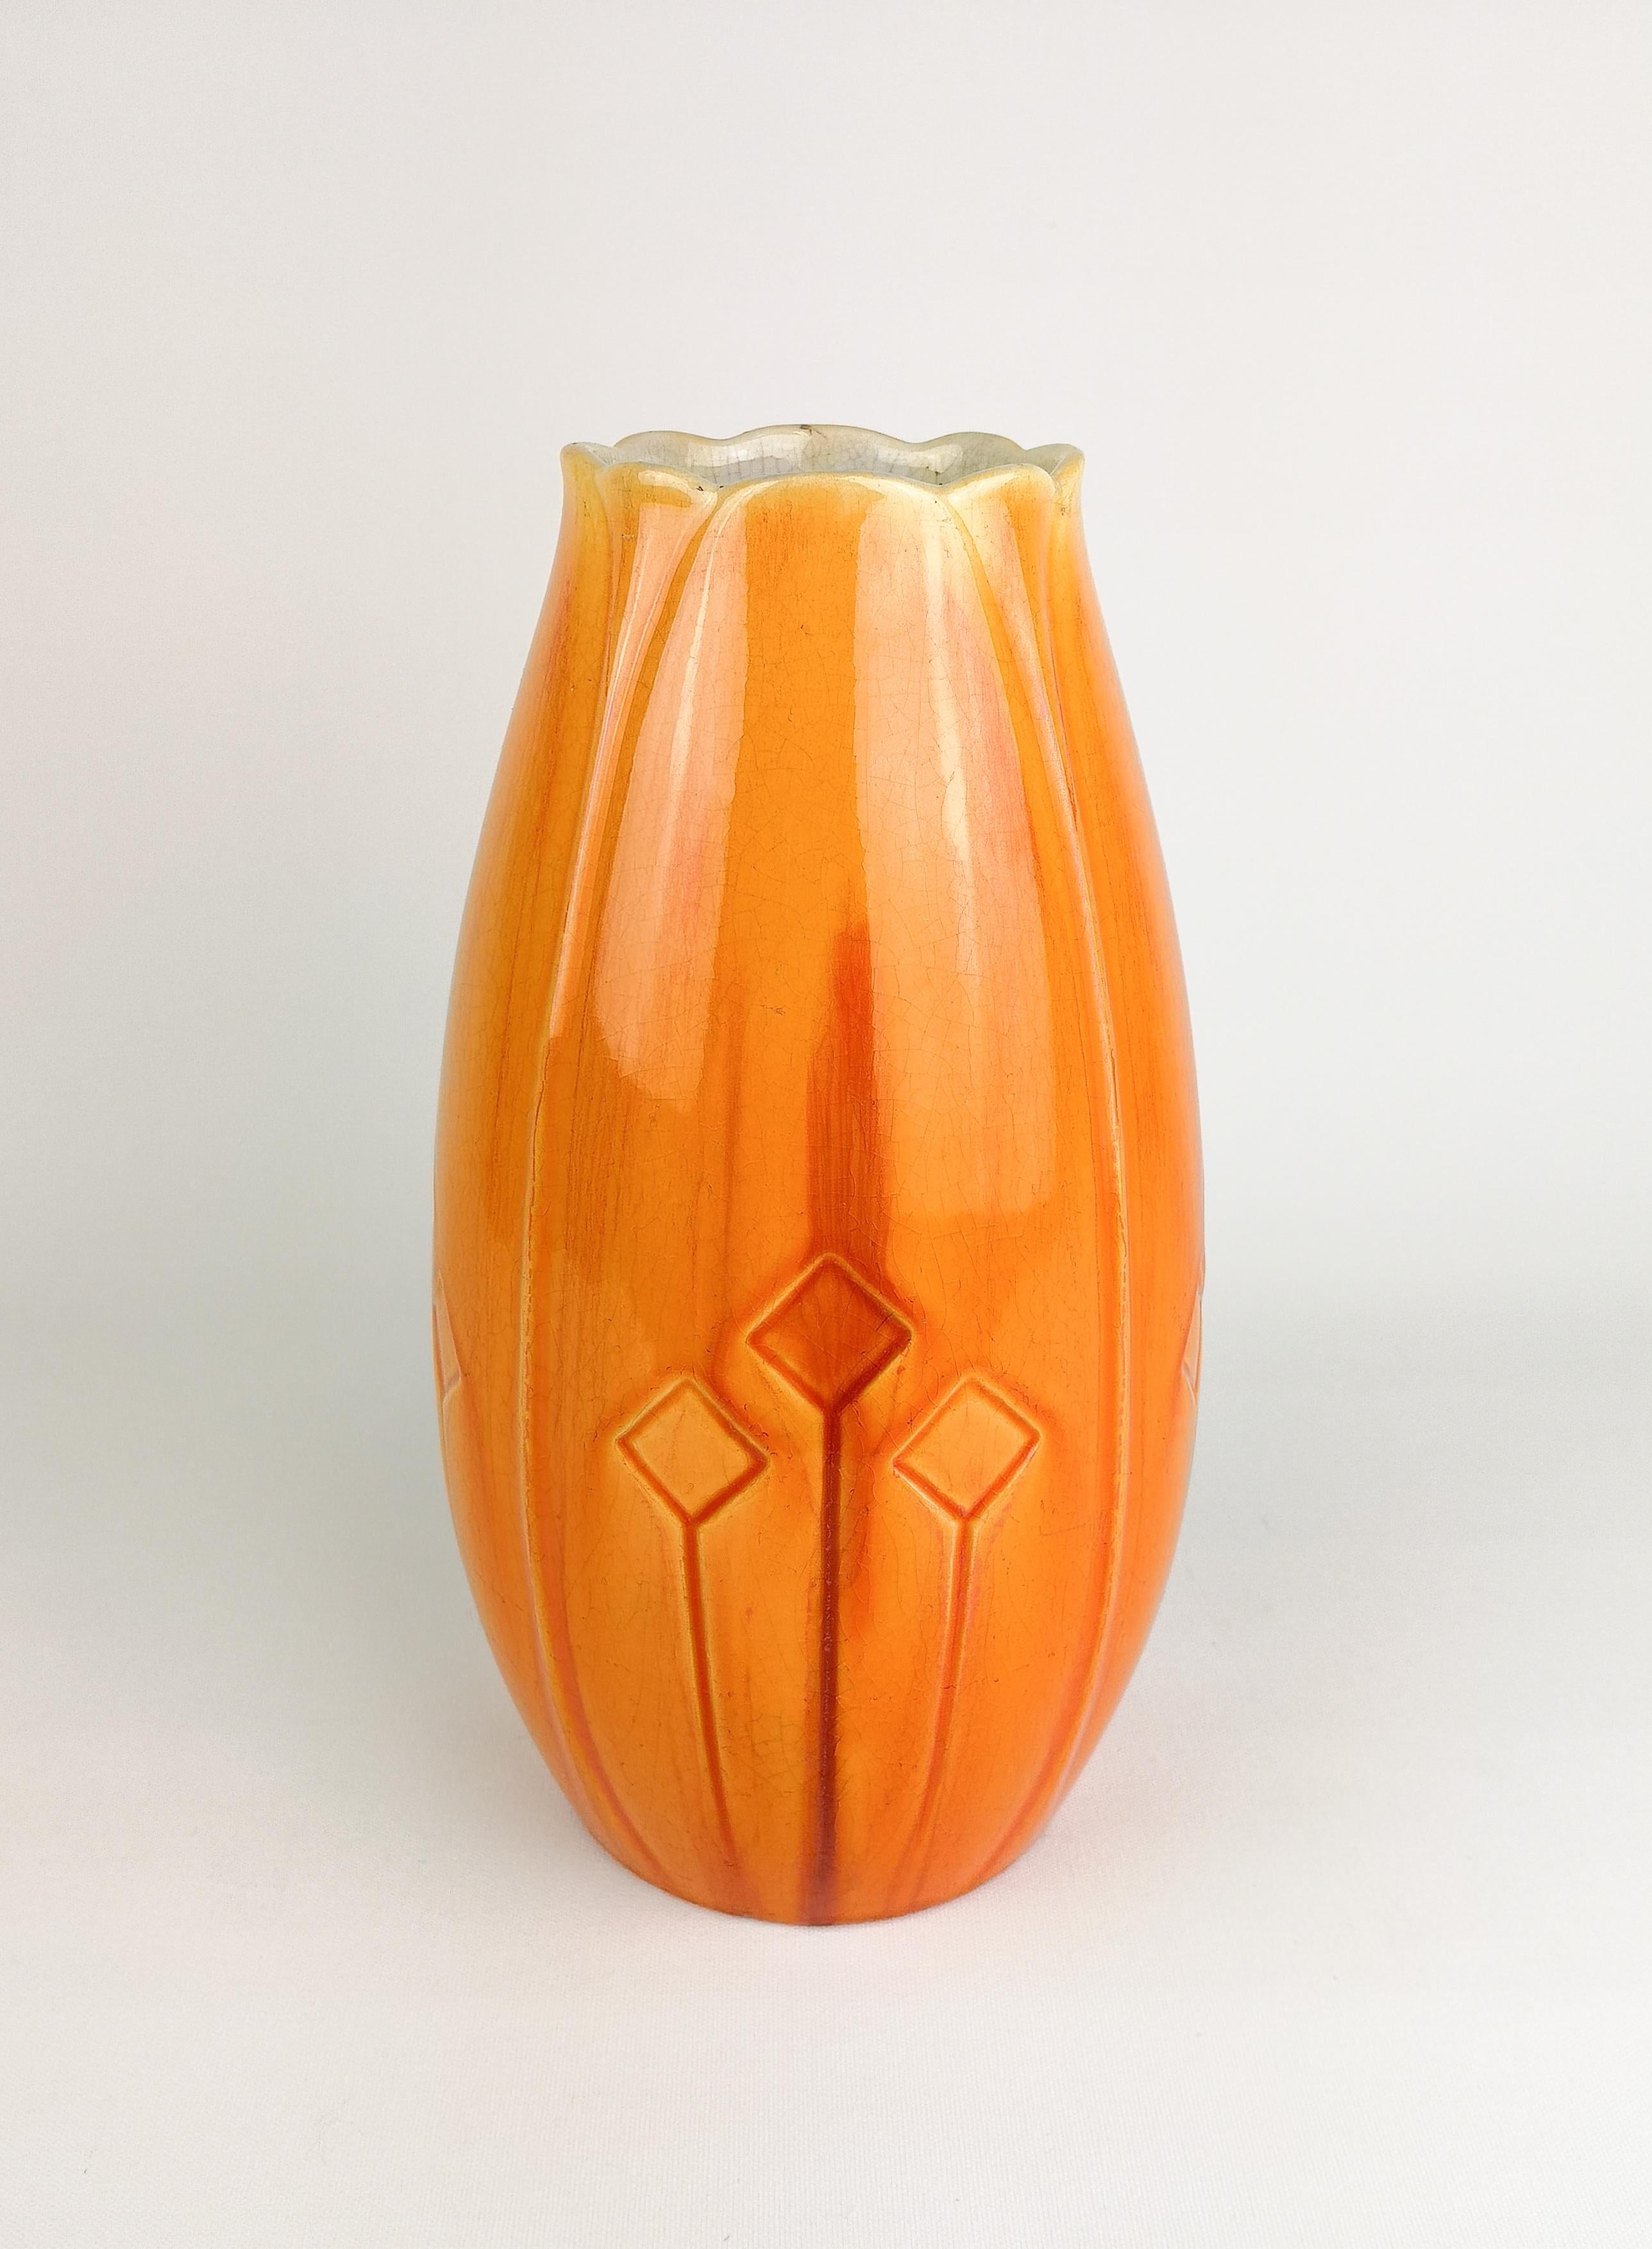 Vase Art Nouveau joliment émaillé, conçu par Alf Wallander pour Rörstrand Suède. La glaçure a une merveilleuse brillance rouge/orange. Le vase a quelques marques de détresse tout autour de son âge.